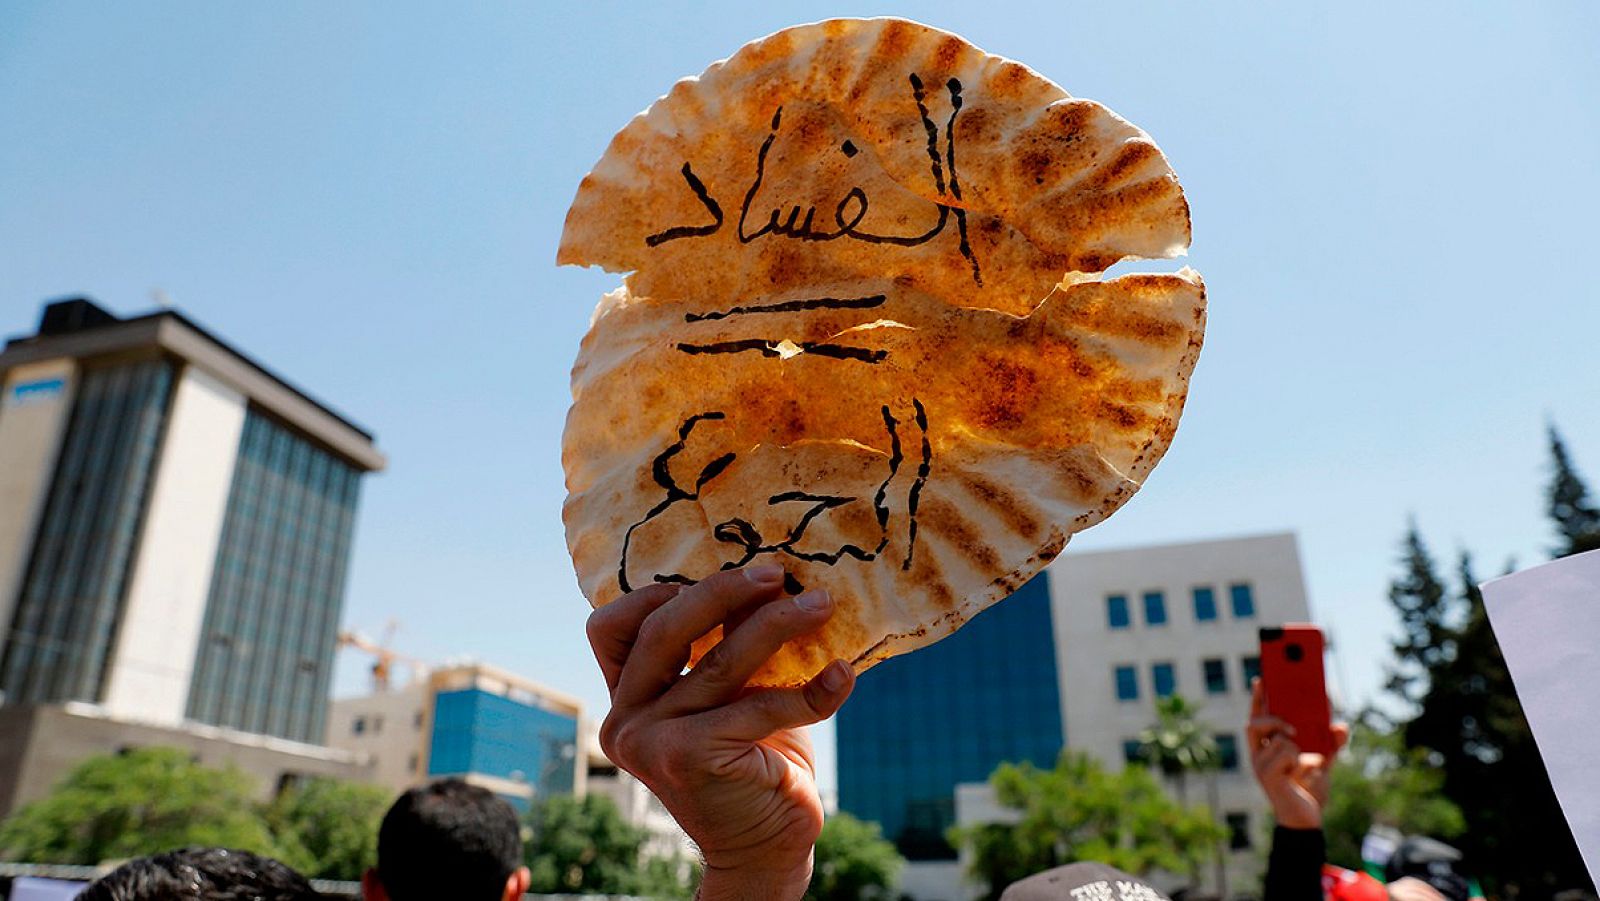 Un manifestante sostiene una pieza de pan con la frase en árabe "Corrupción = Hambre", durante una protesta en Amman